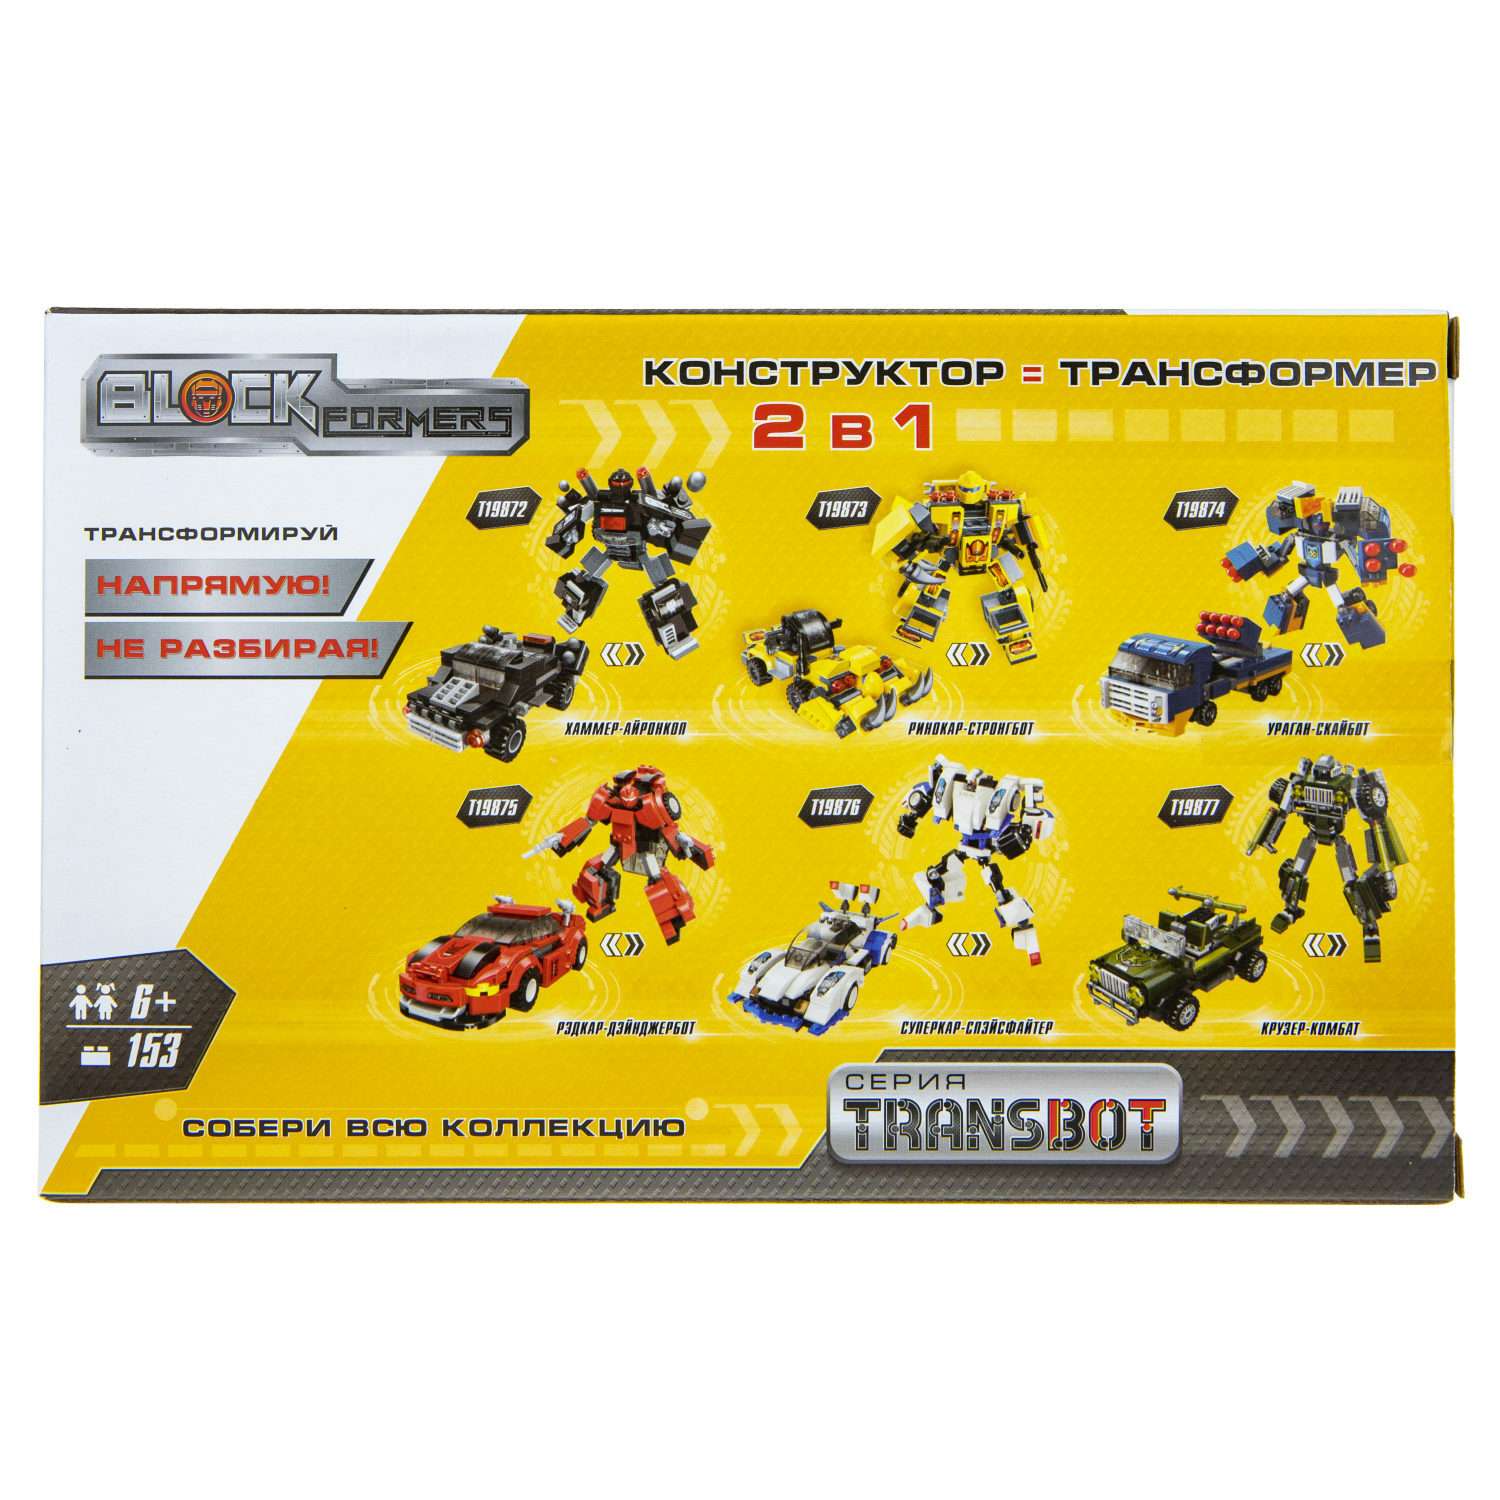 Конструктор Blockformers Transbot Рэдкар-Дэйнжербот - фото 6